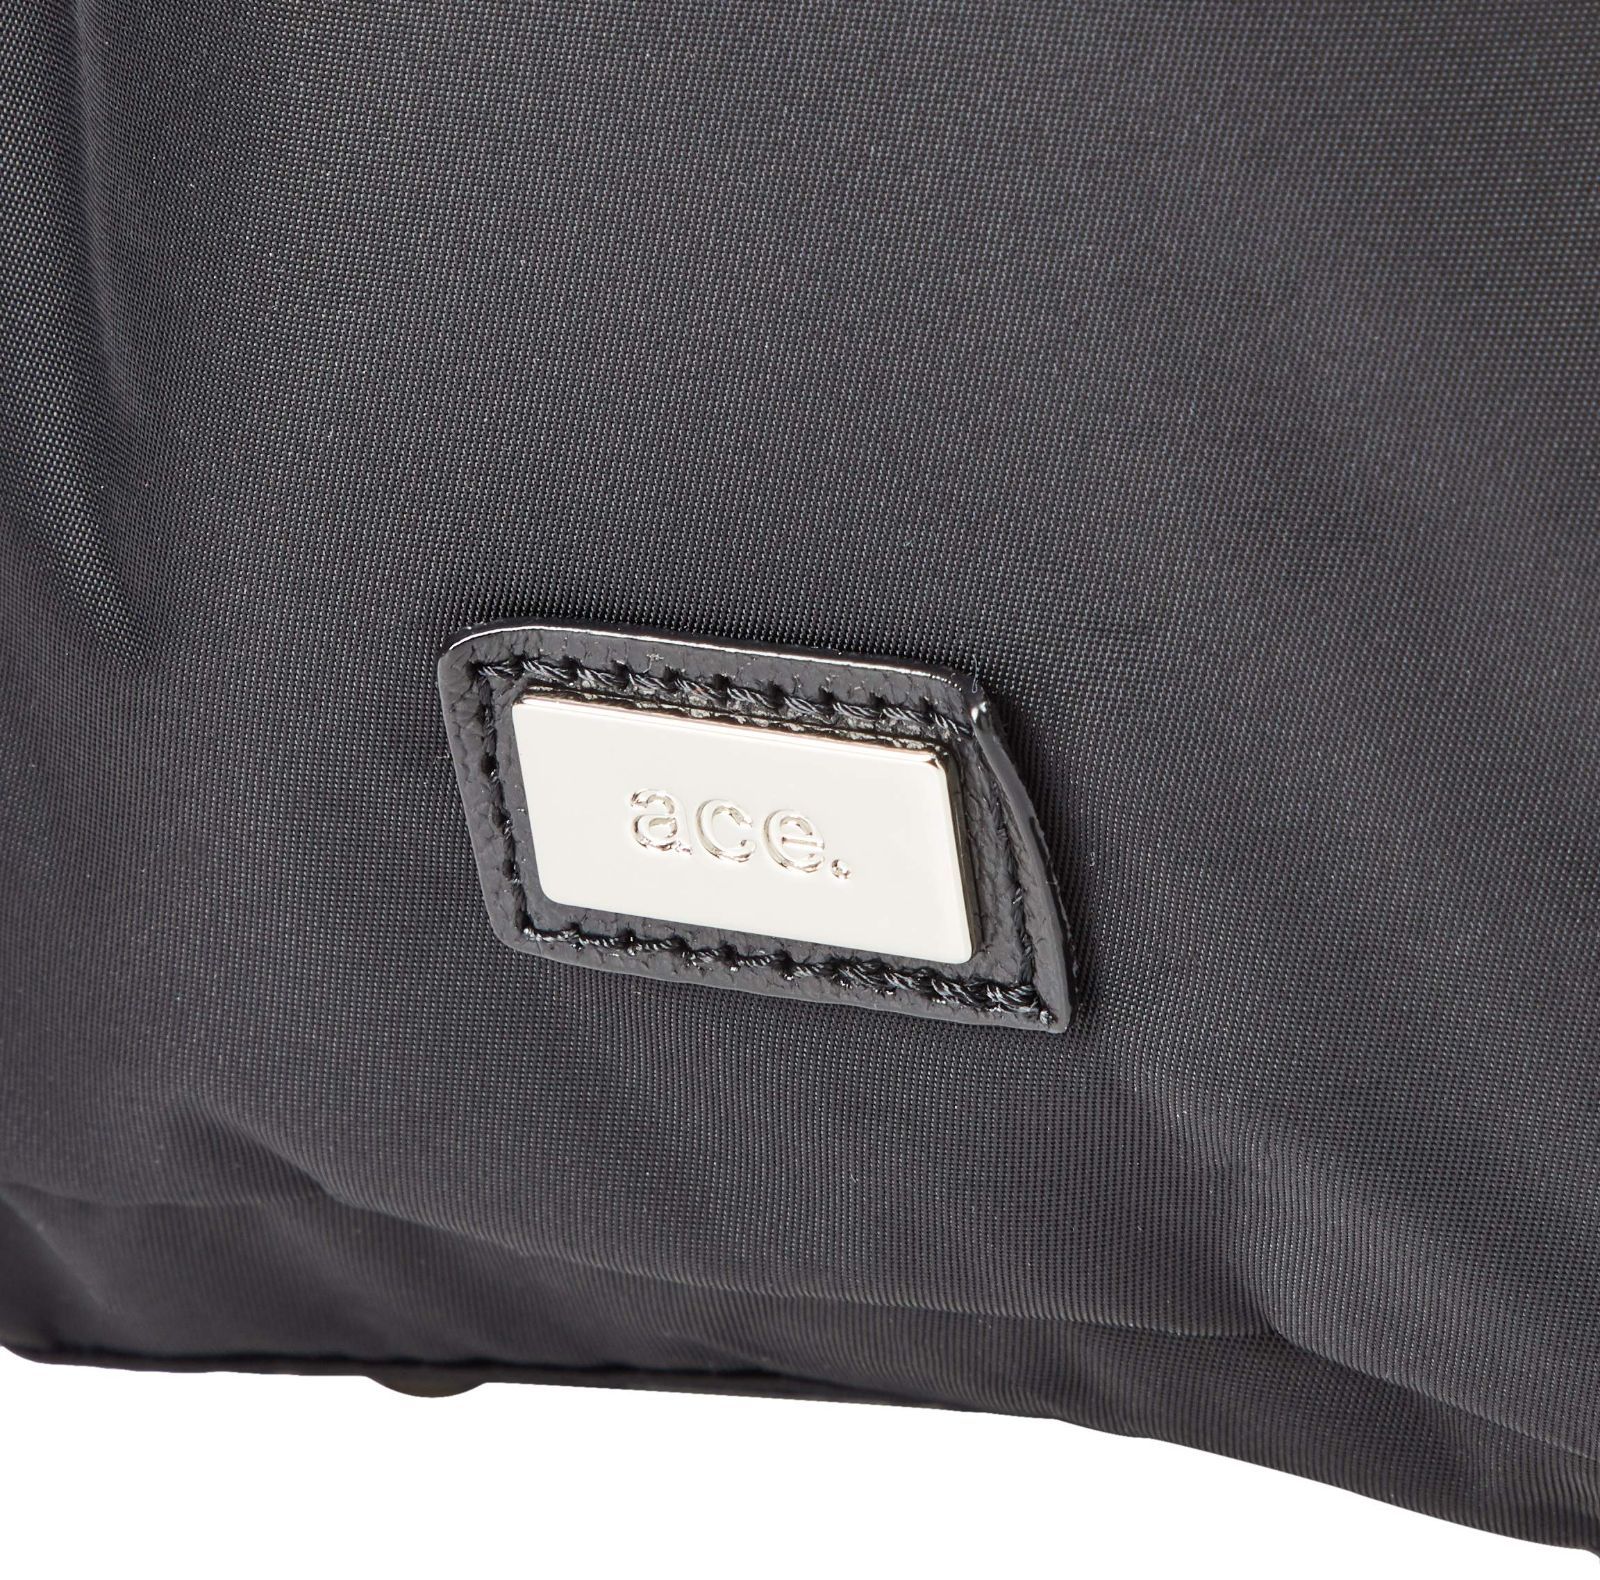 人気定番の 新品、未使用 色: ブラックエースジーン ビジネスバッグ